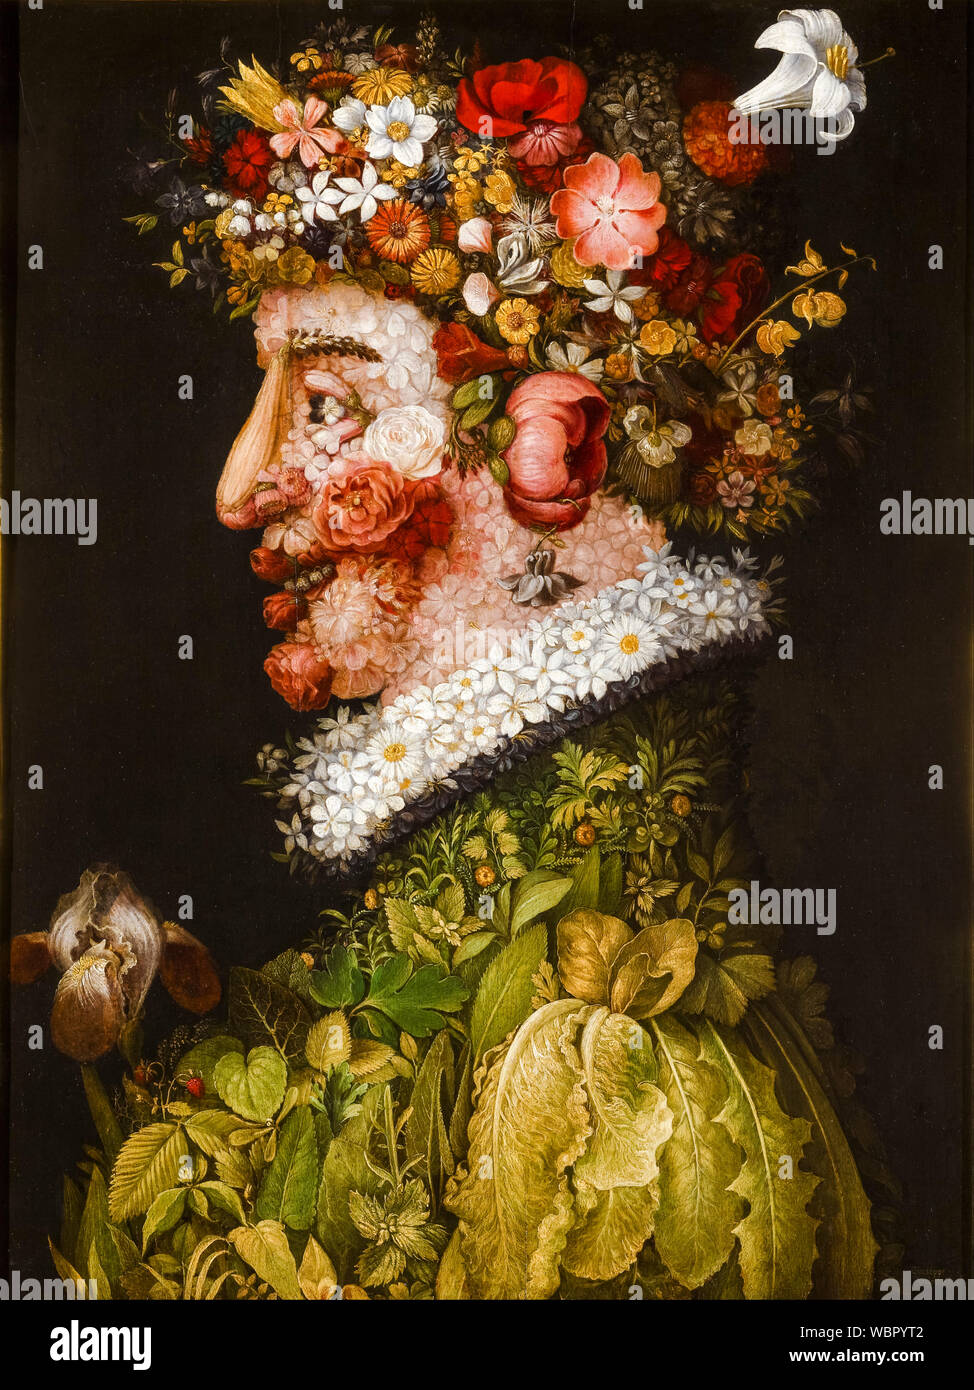 Giuseppe Arcimboldo, printemps, (Les Quatre Saisons), peinture, 1563 Banque D'Images